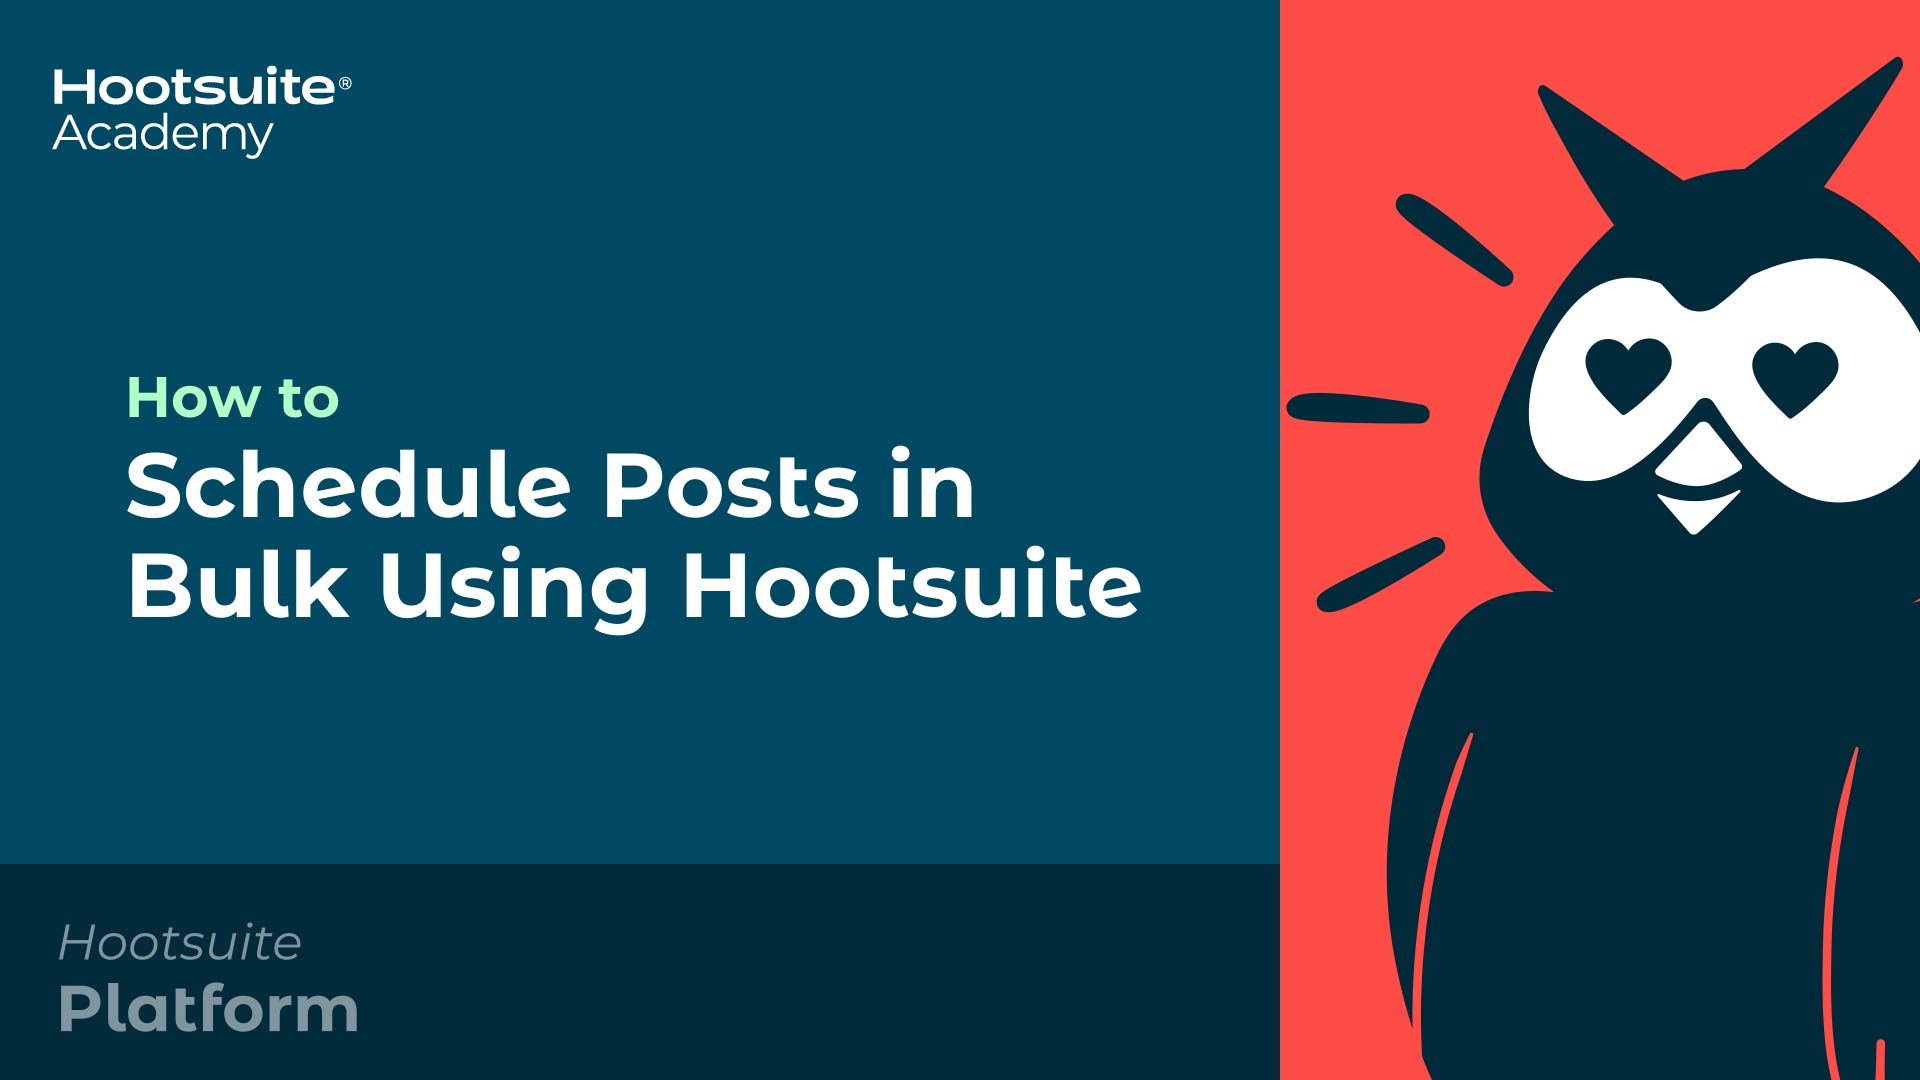 Vídeo Como agendar postagens em massa usando a Hootsuite